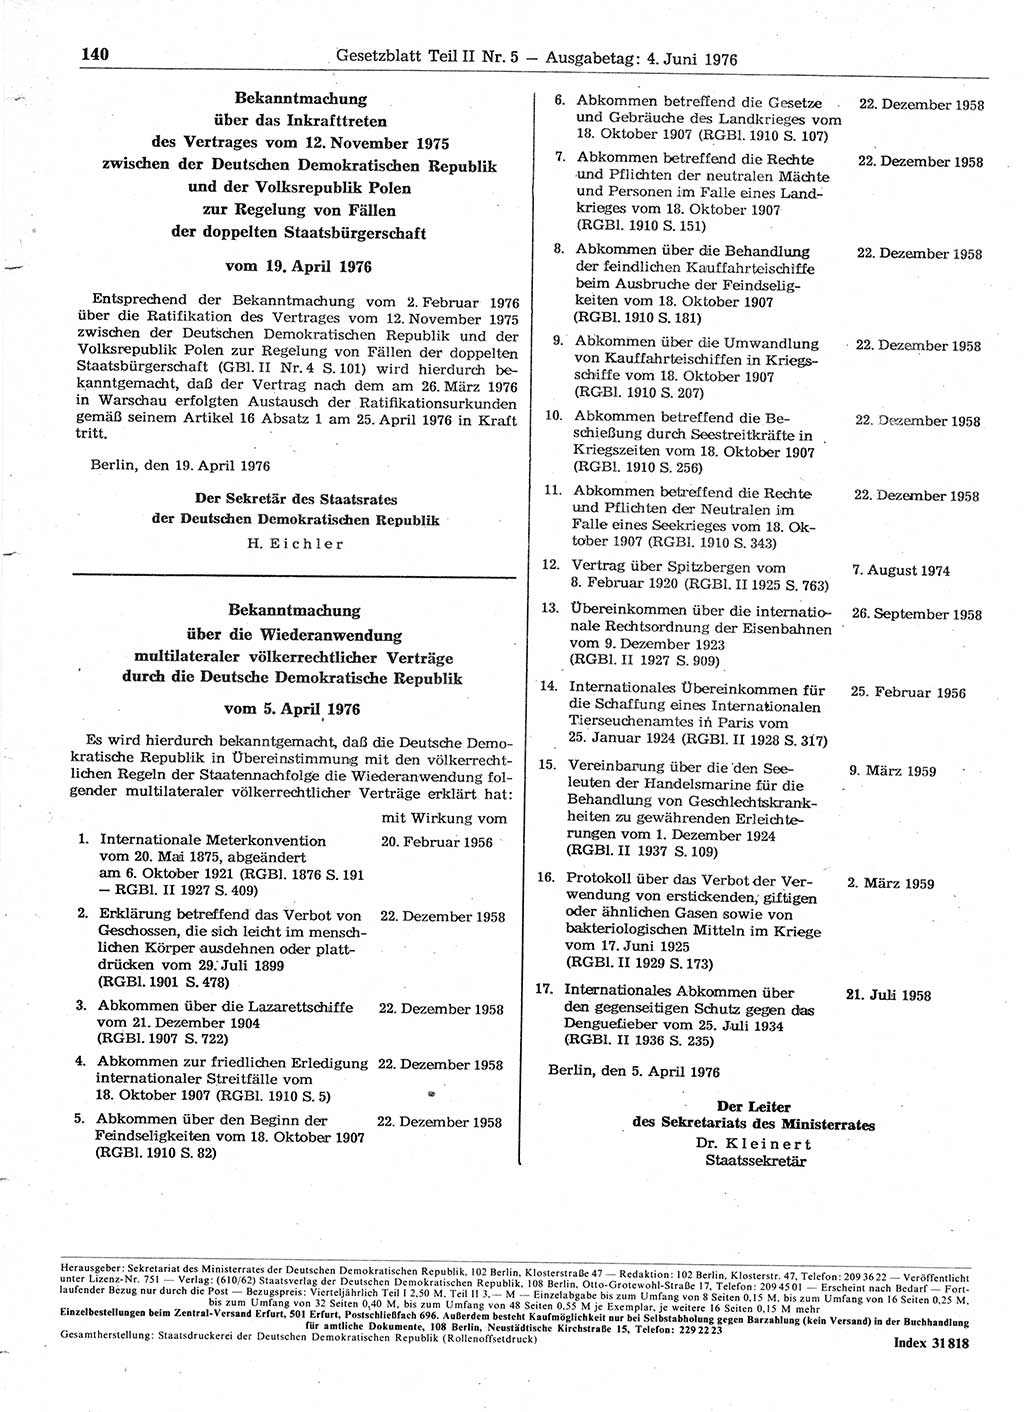 Gesetzblatt (GBl.) der Deutschen Demokratischen Republik (DDR) Teil ⅠⅠ 1976, Seite 140 (GBl. DDR ⅠⅠ 1976, S. 140)